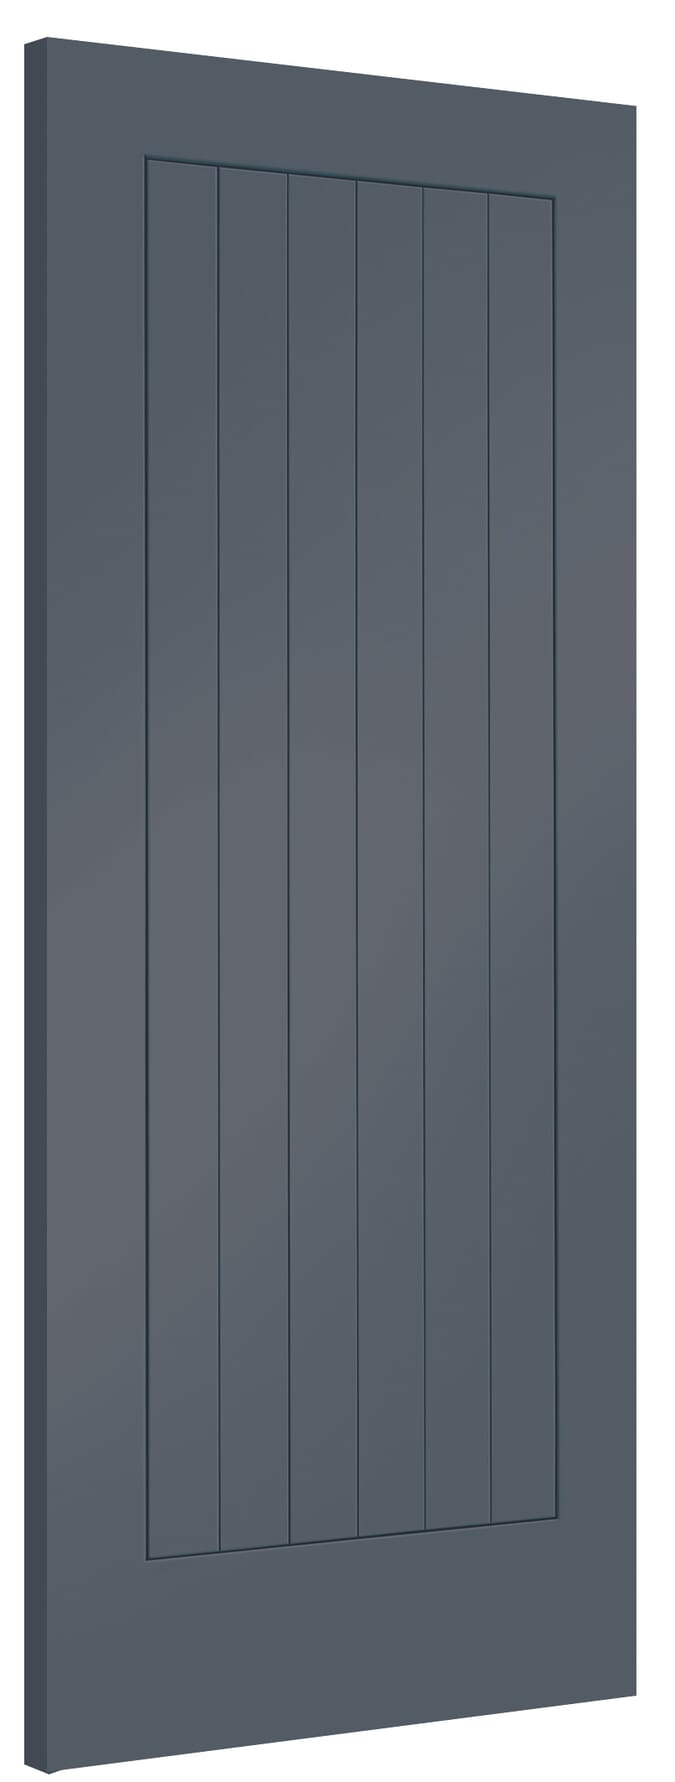 762x1981x35mm (30") Suffolk Cinder Grey Internal Doors